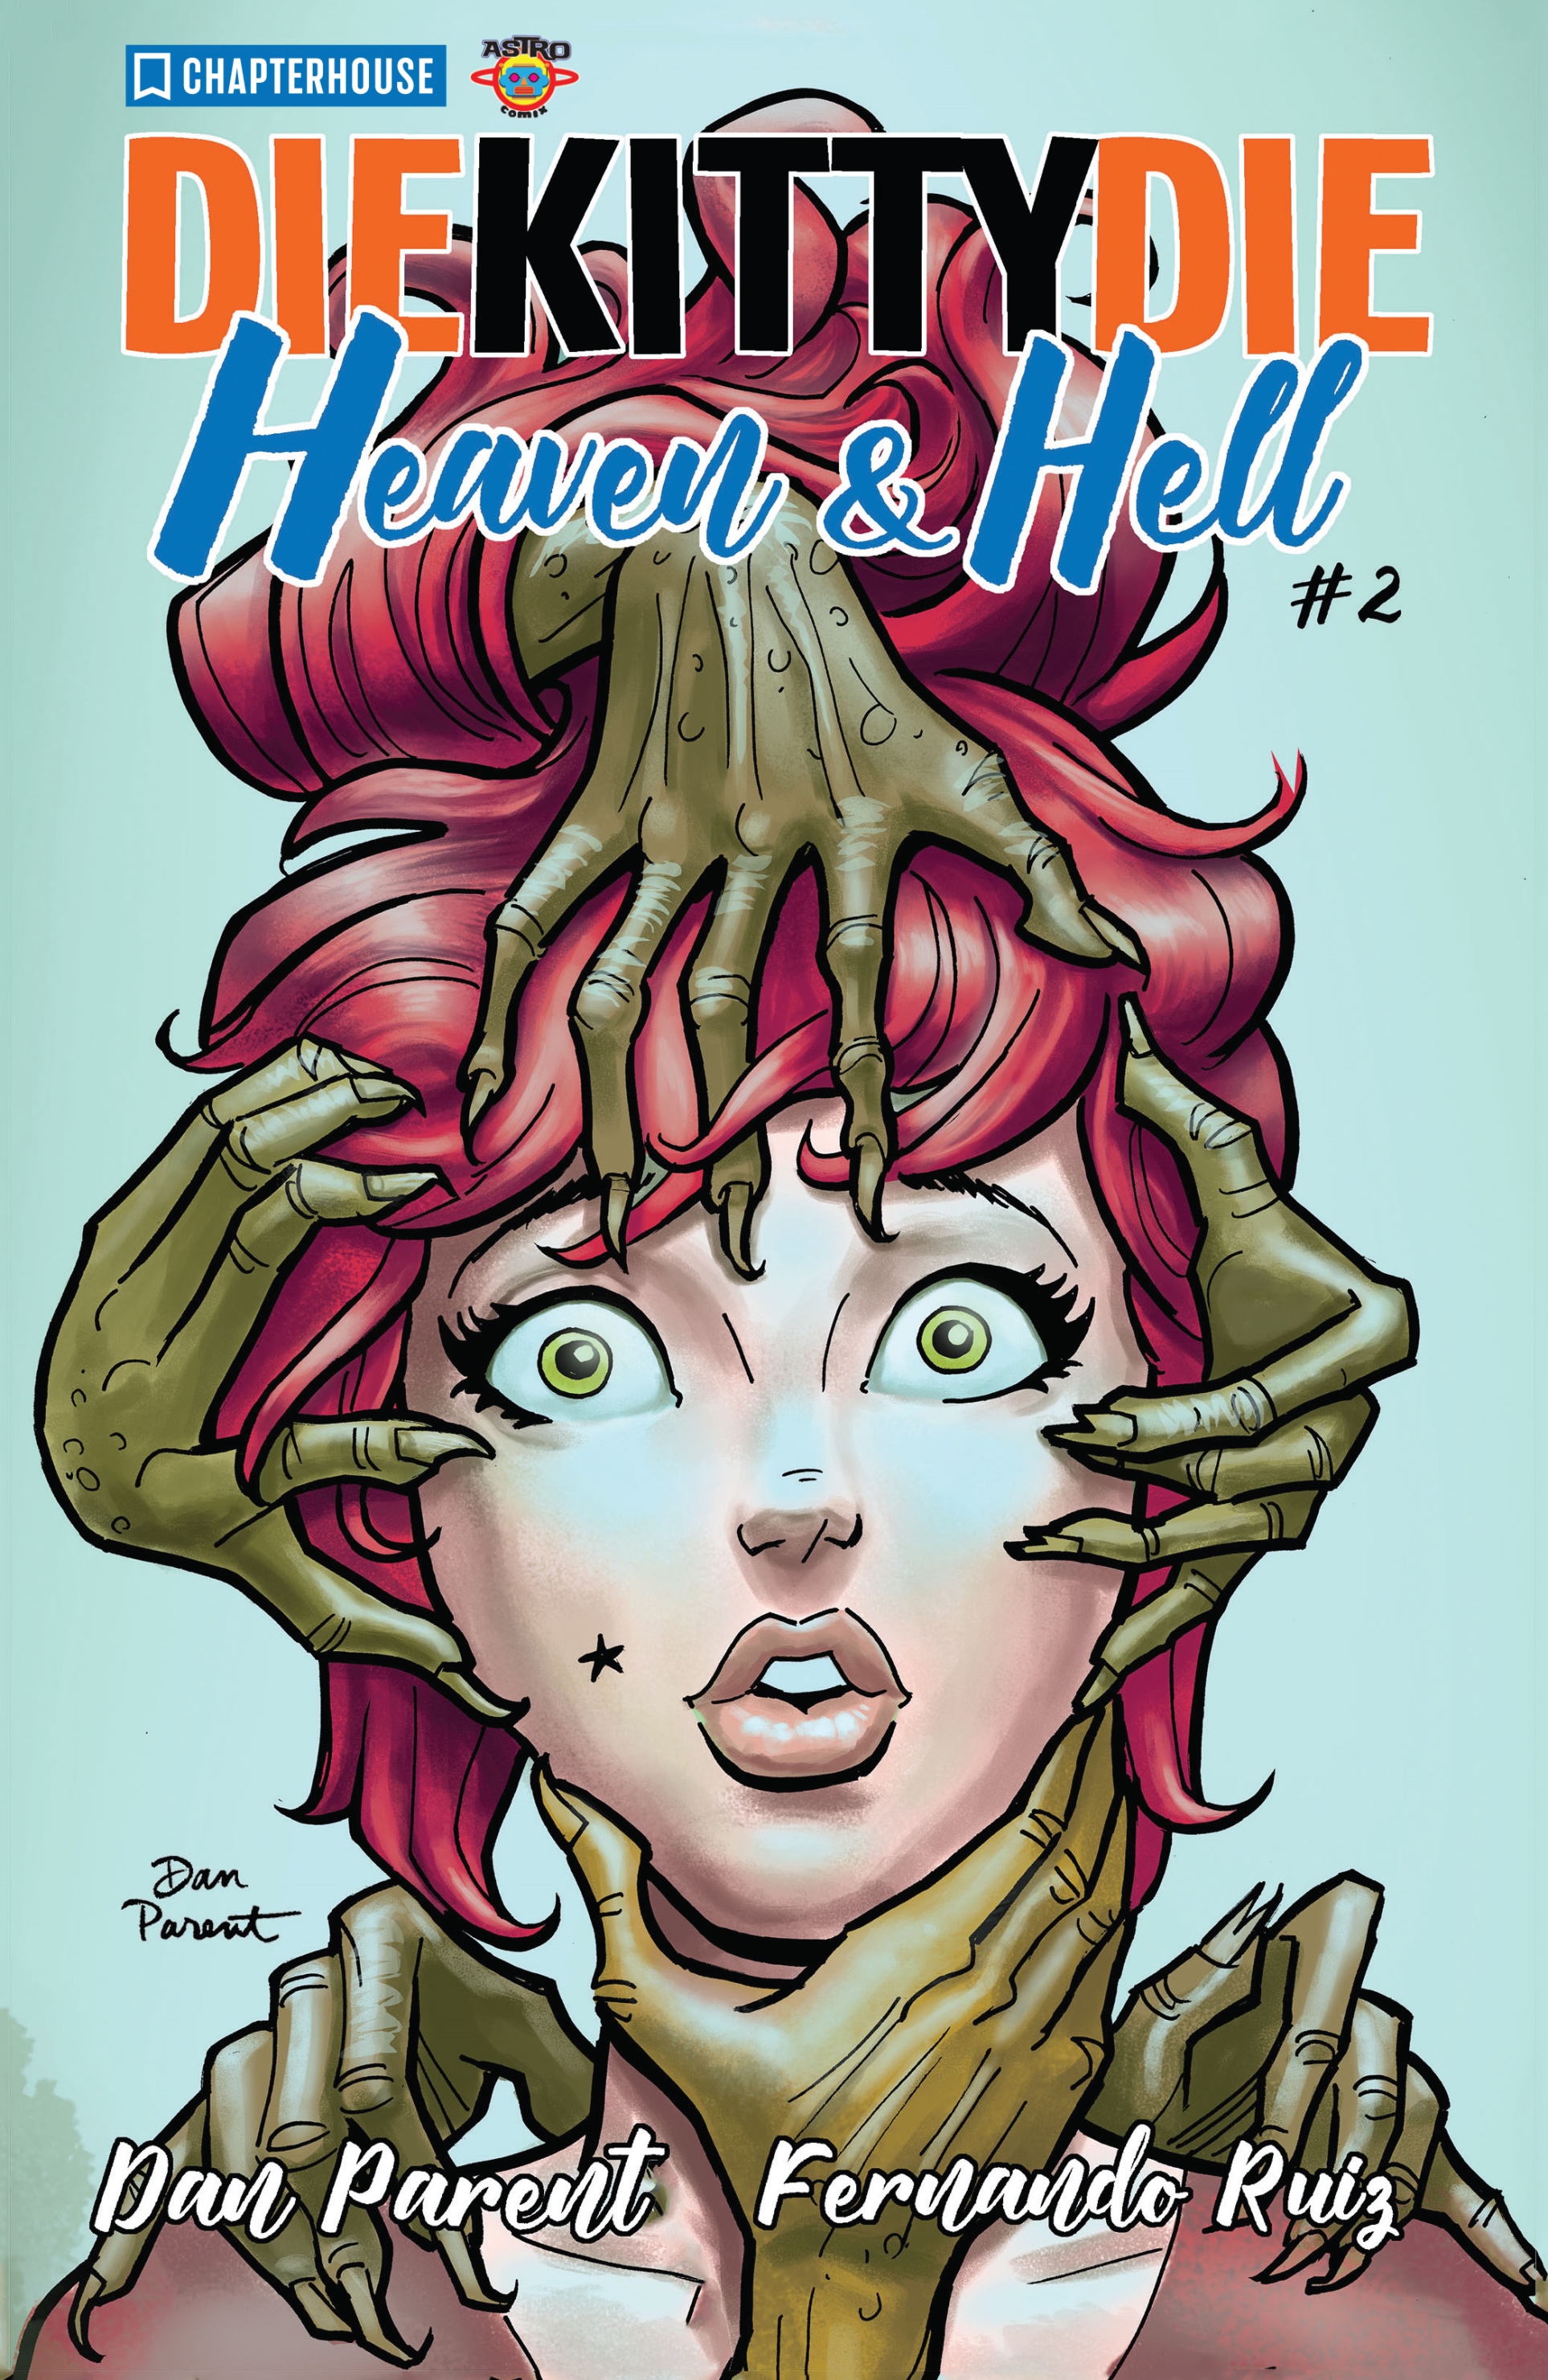 Read online Die Kitty Die! Heaven & Hell comic -  Issue #2 - 2